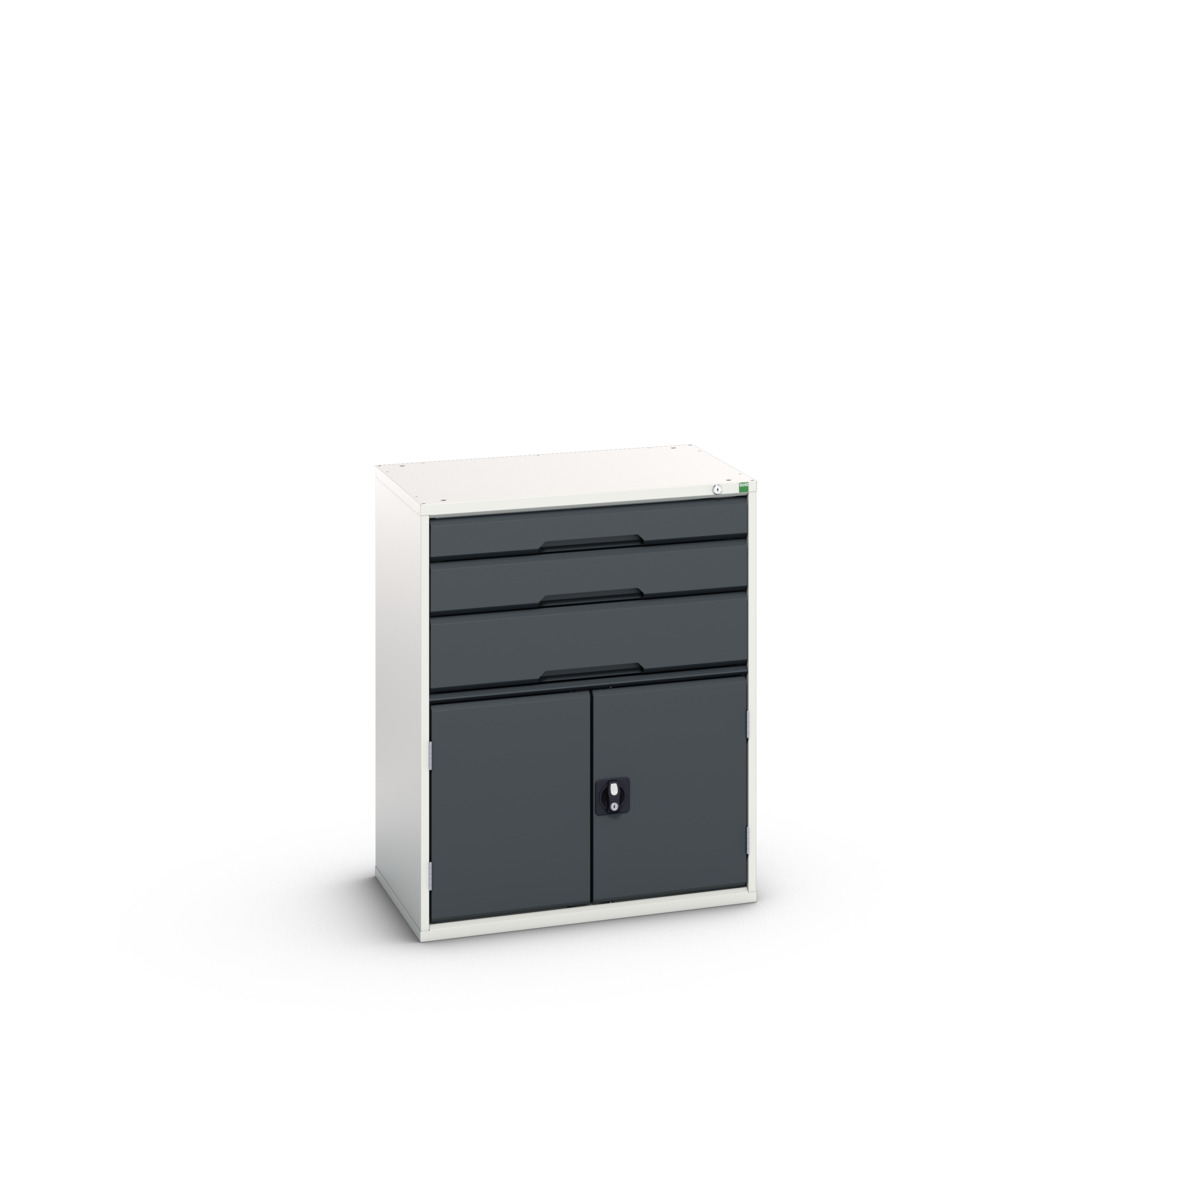 16925161.19 - verso drawer-door cabinet